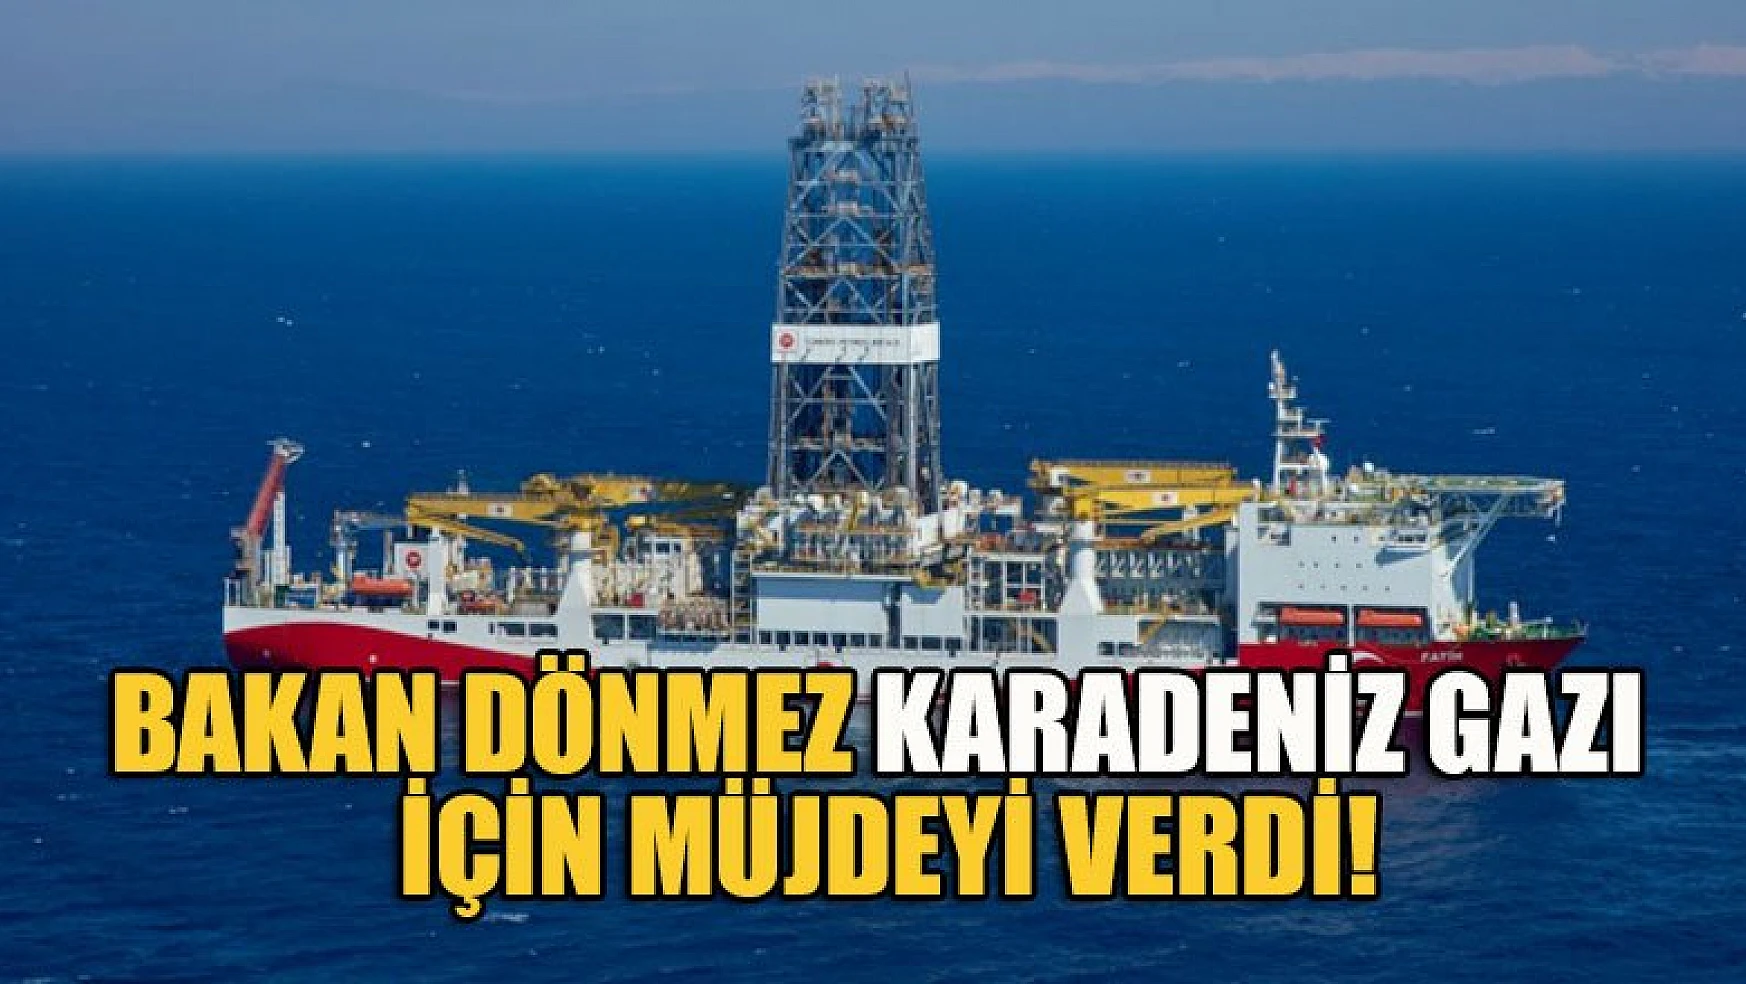 Bakan Dönmez Karadeniz gazı için müjdeyi verdi